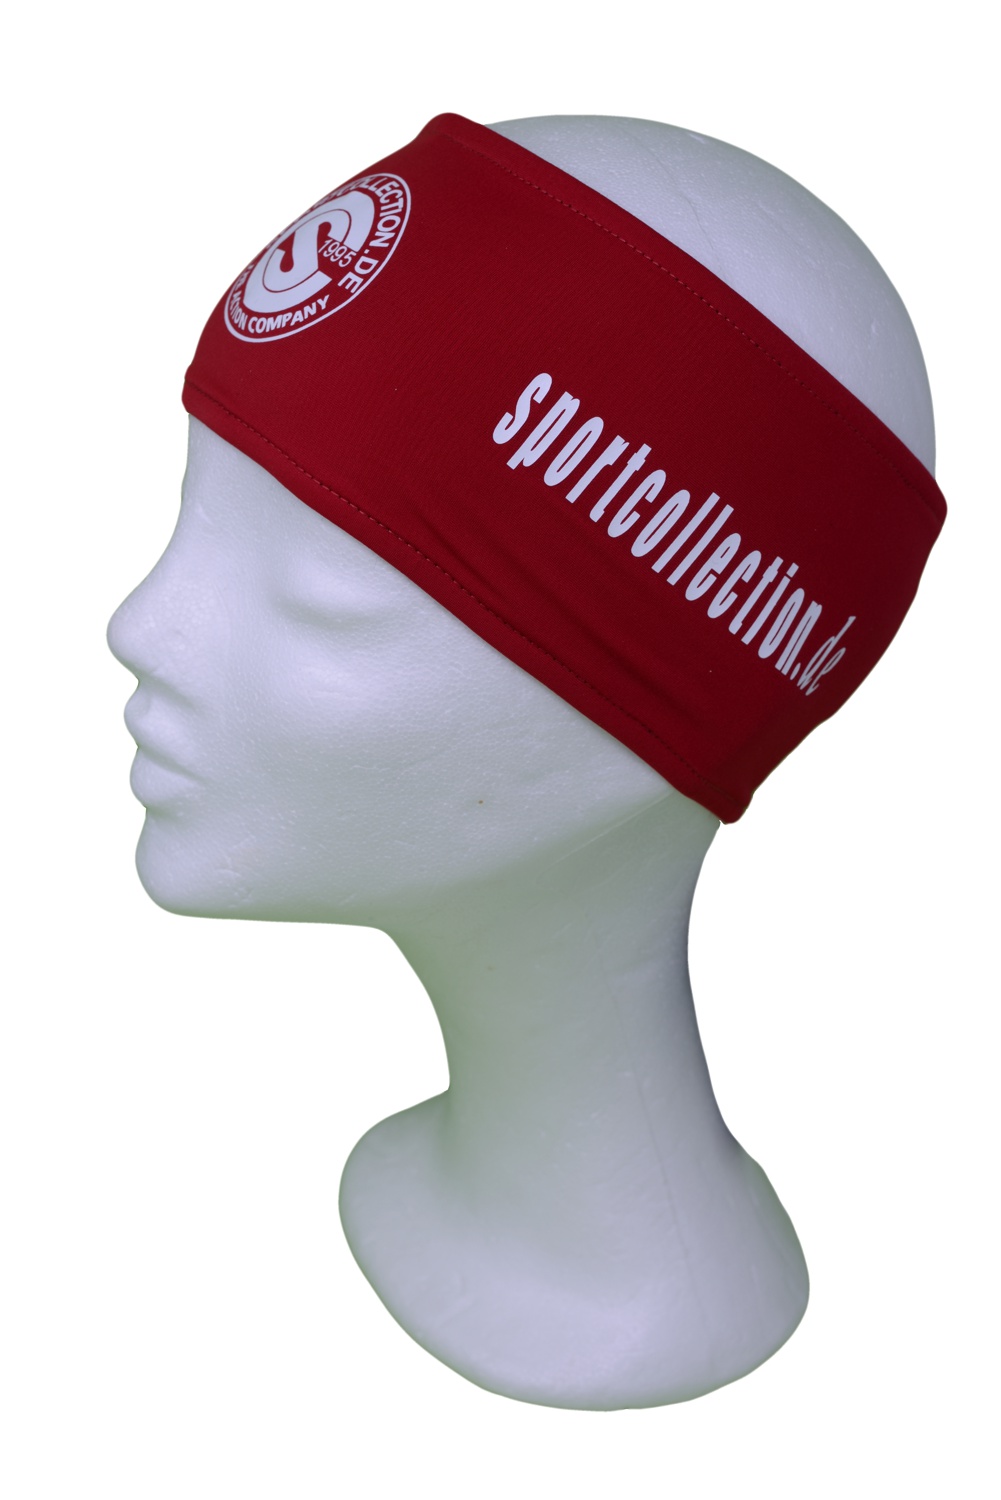 Stöhr Stirnband Rot-Weiß-Logo-Text